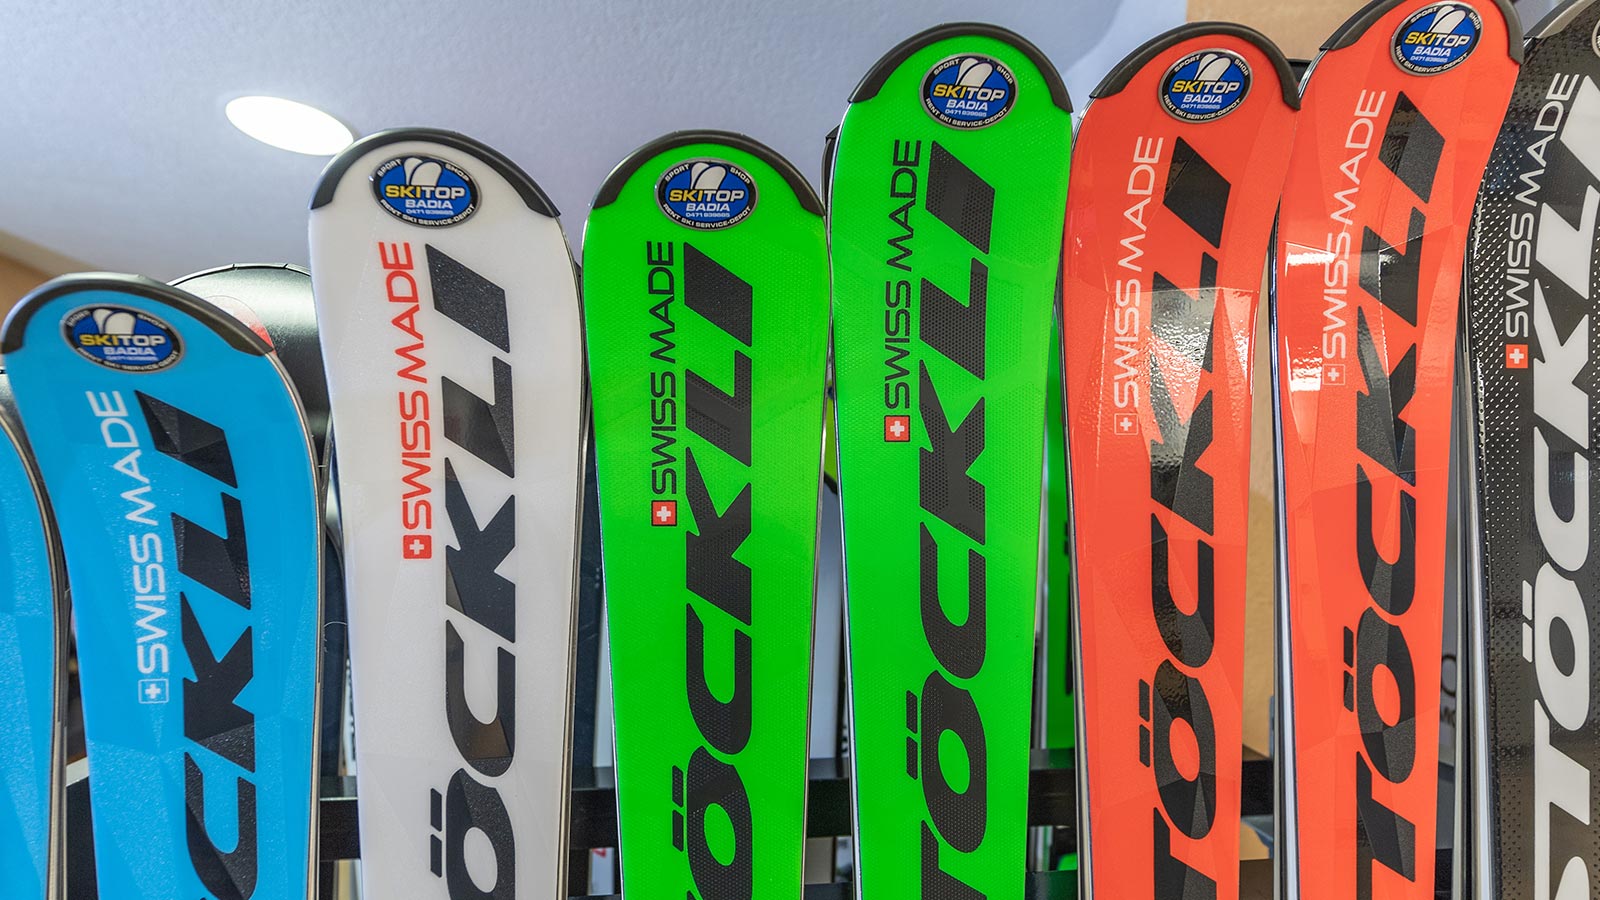 Detail des Ski Top Badia Logos auf den Leihskiern
